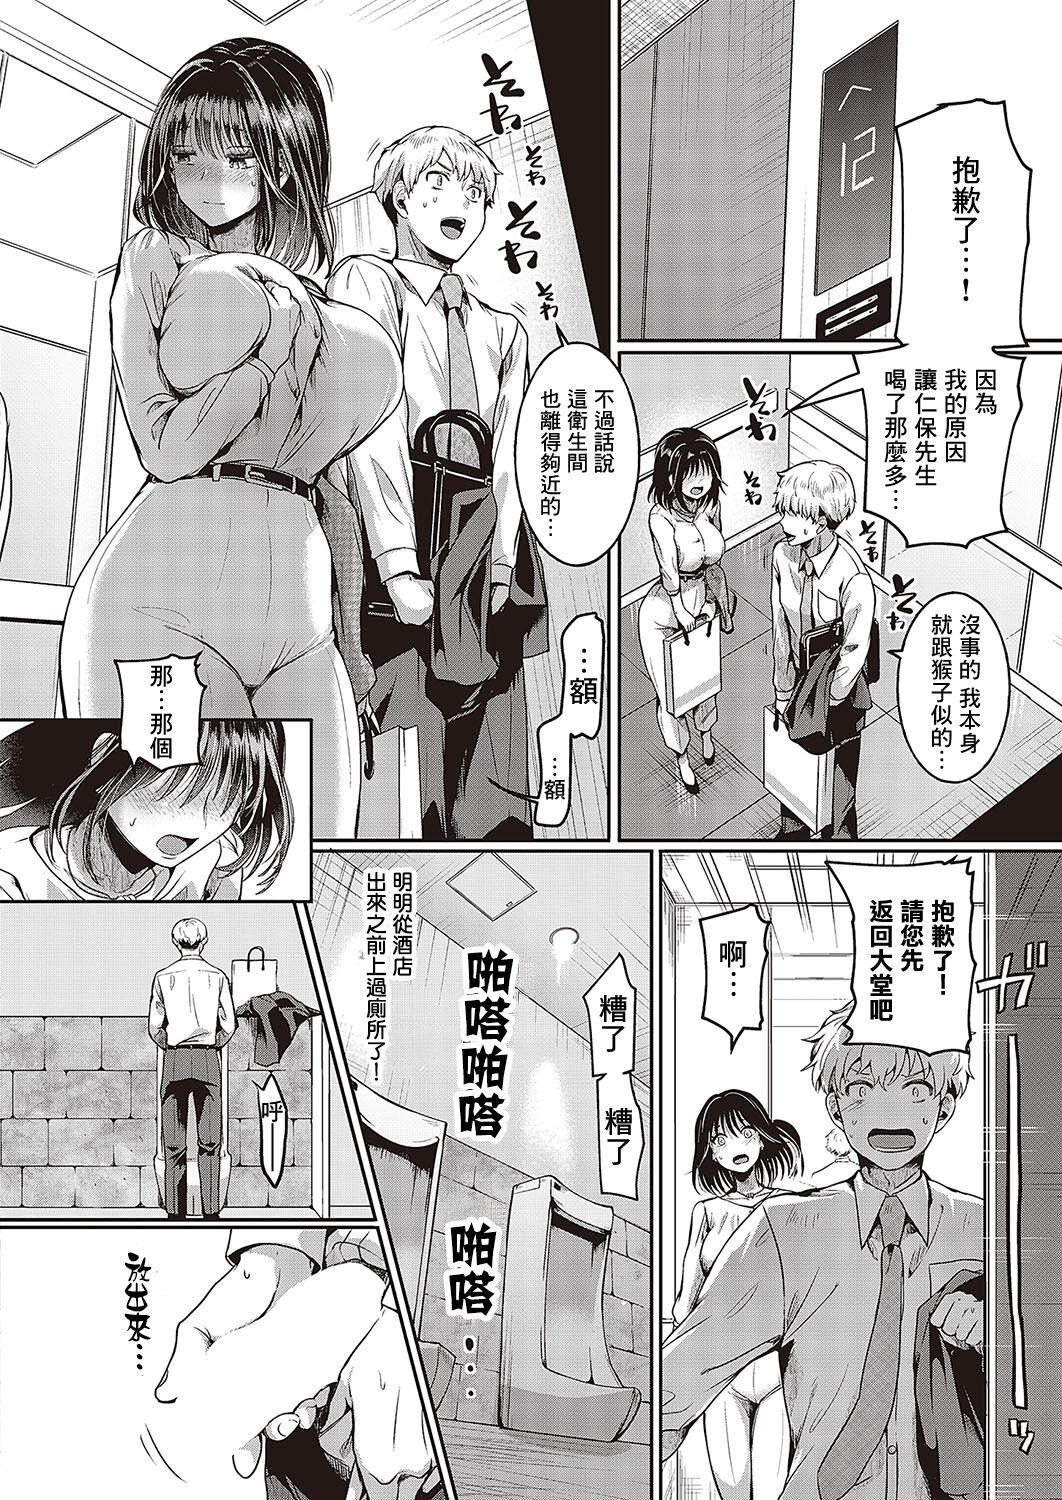 Tats Compla Ihandesu! Hiyama-san! Peluda - Page 6